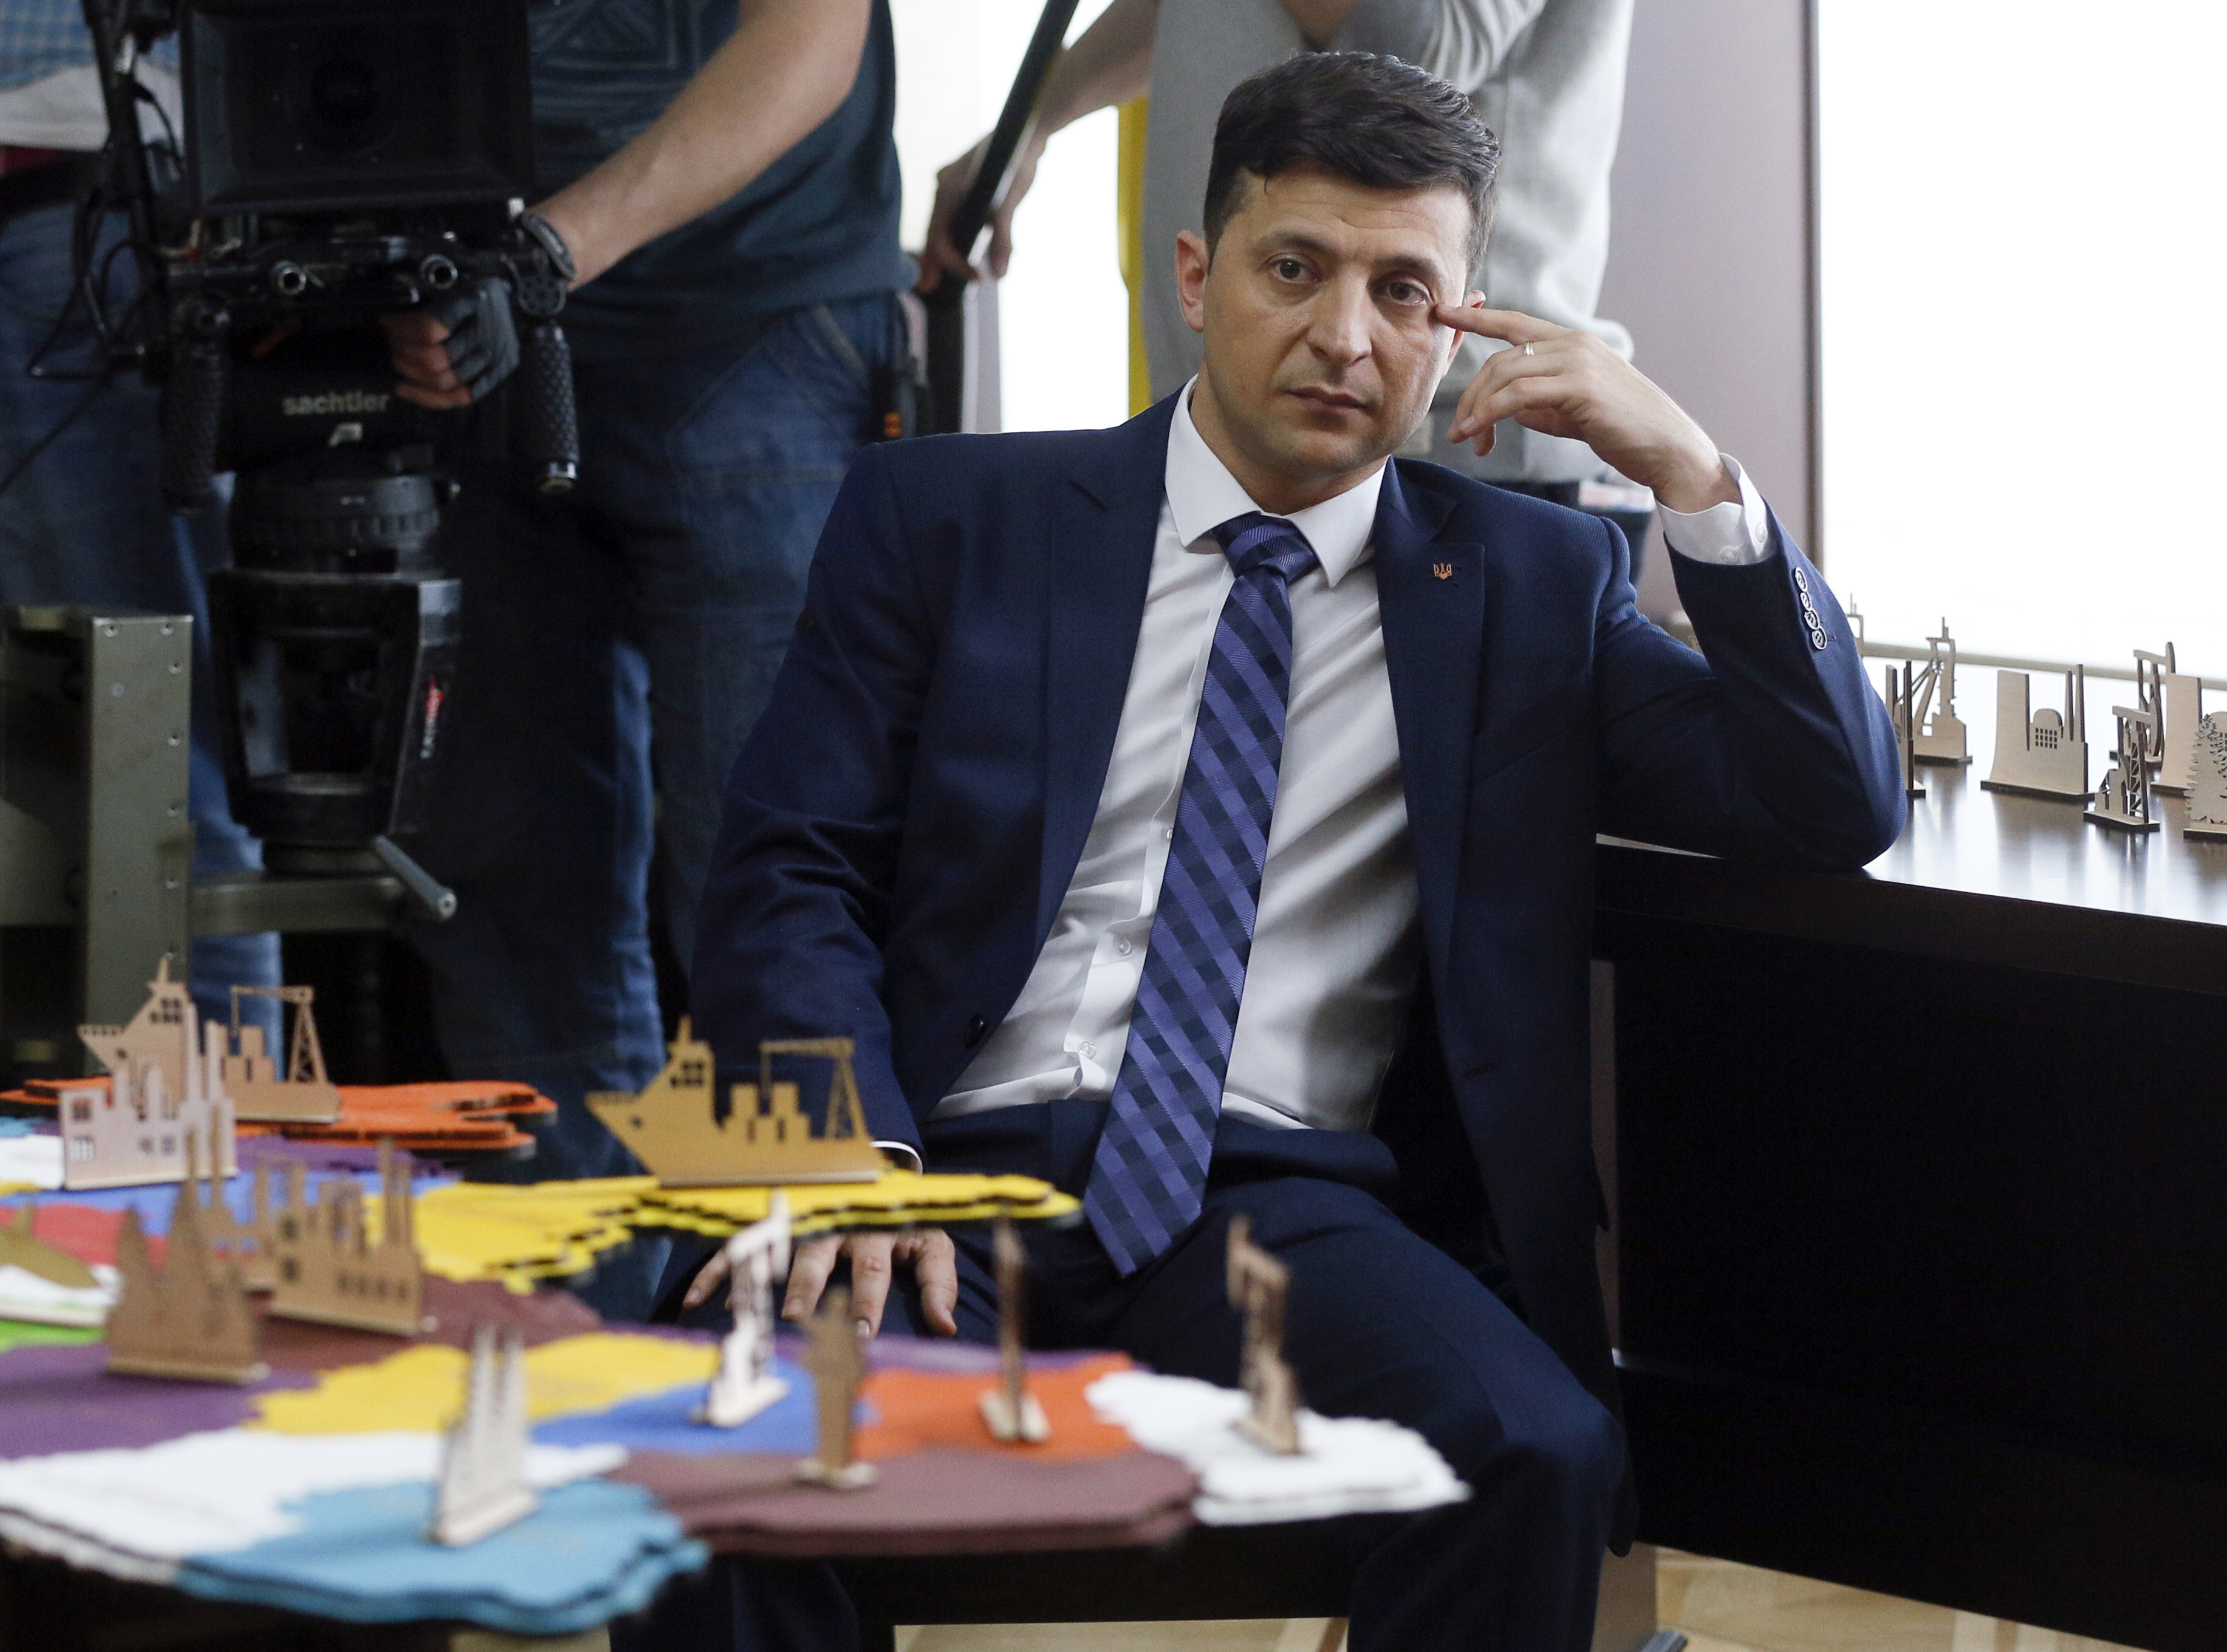 Le comédien ukrainien Volodymyr Zelenskiy lors du tournage d'un film, à Kiev, le 6 février 2019, avant son élection.